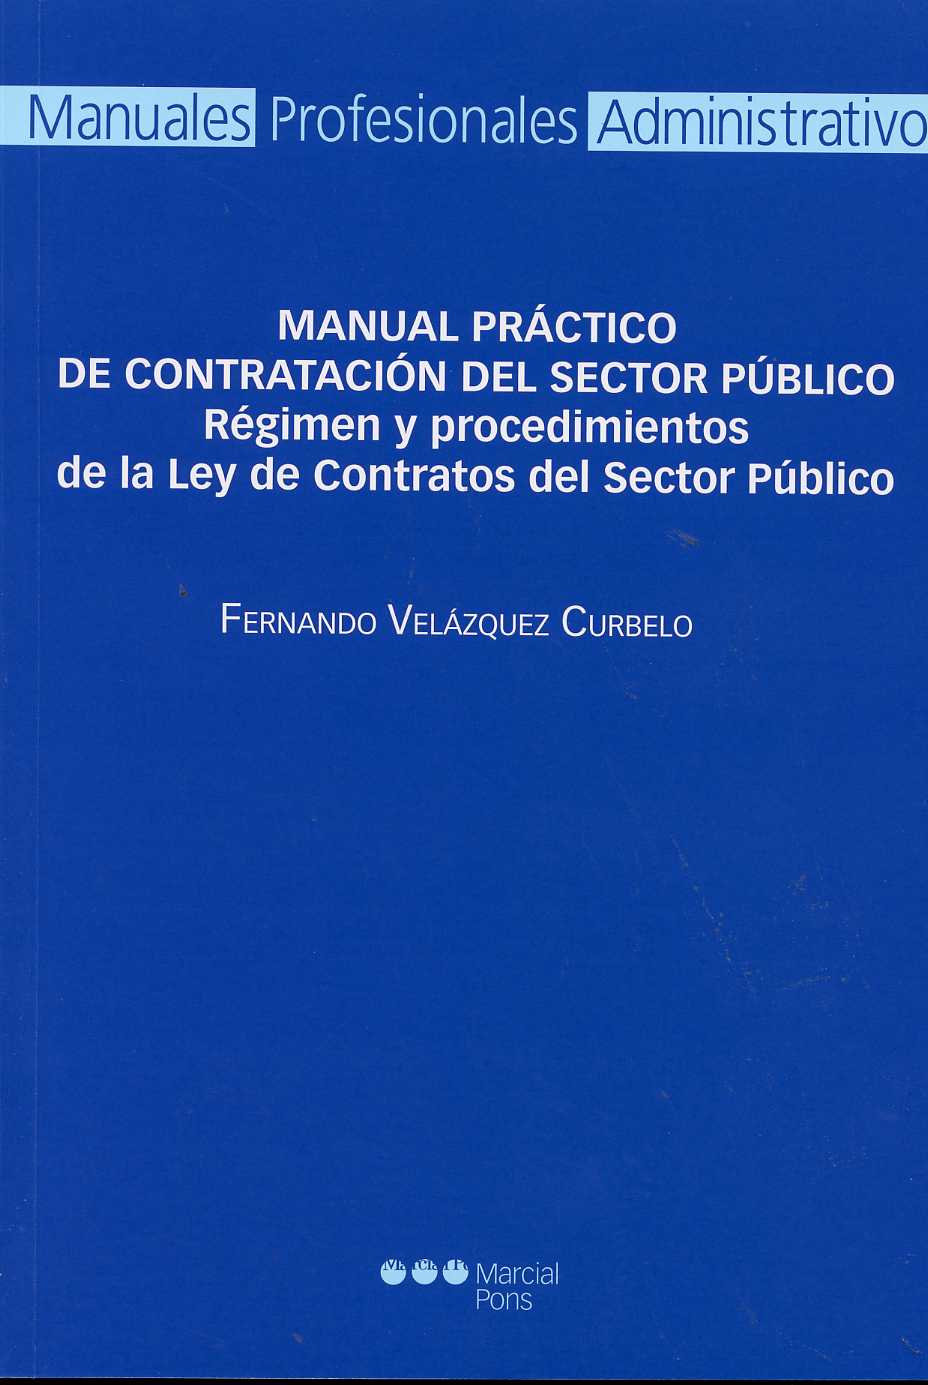 Manual Práctico de Contratación del Sector Público. Régimen y Procedimientos de la Ley de Contratos del Sector Público.-0